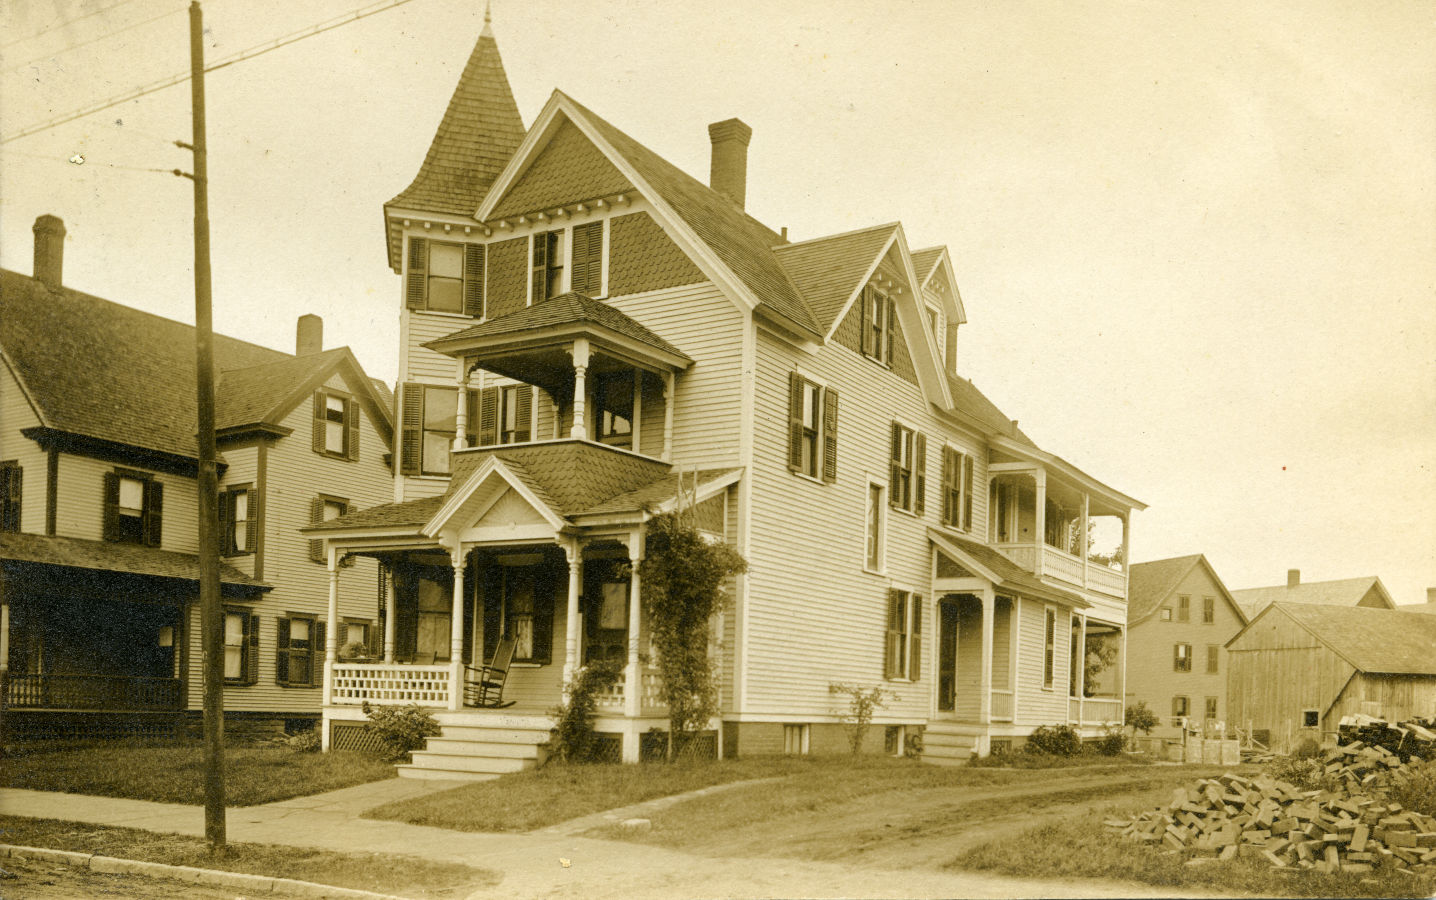 193-195 White Street